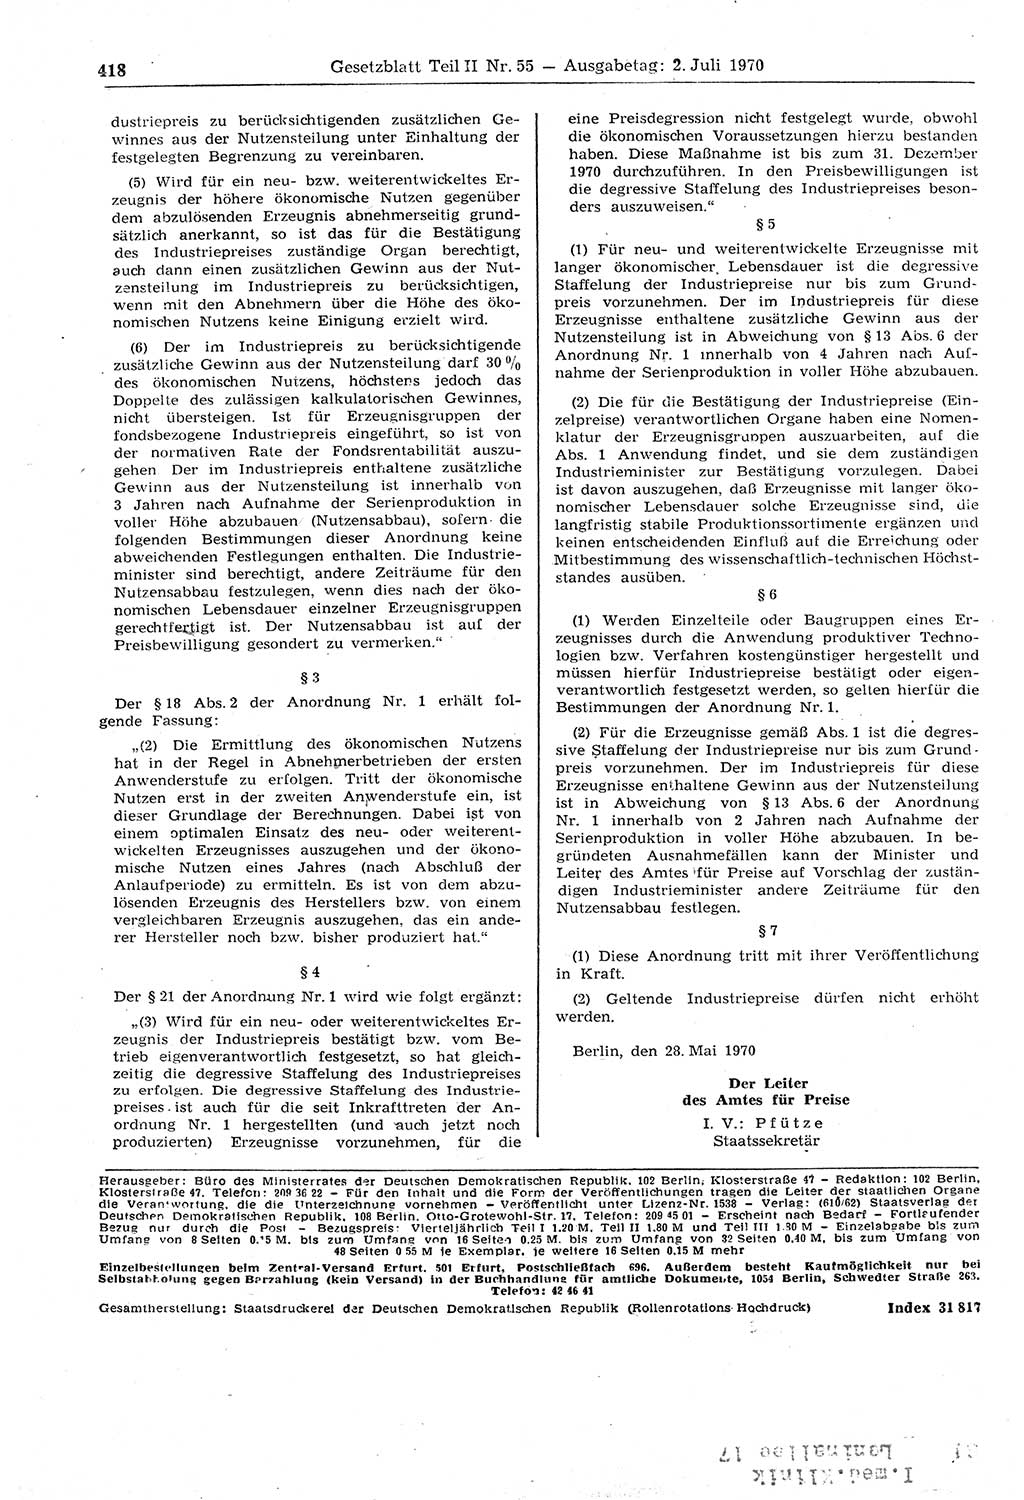 Gesetzblatt (GBl.) der Deutschen Demokratischen Republik (DDR) Teil ⅠⅠ 1970, Seite 418 (GBl. DDR ⅠⅠ 1970, S. 418)